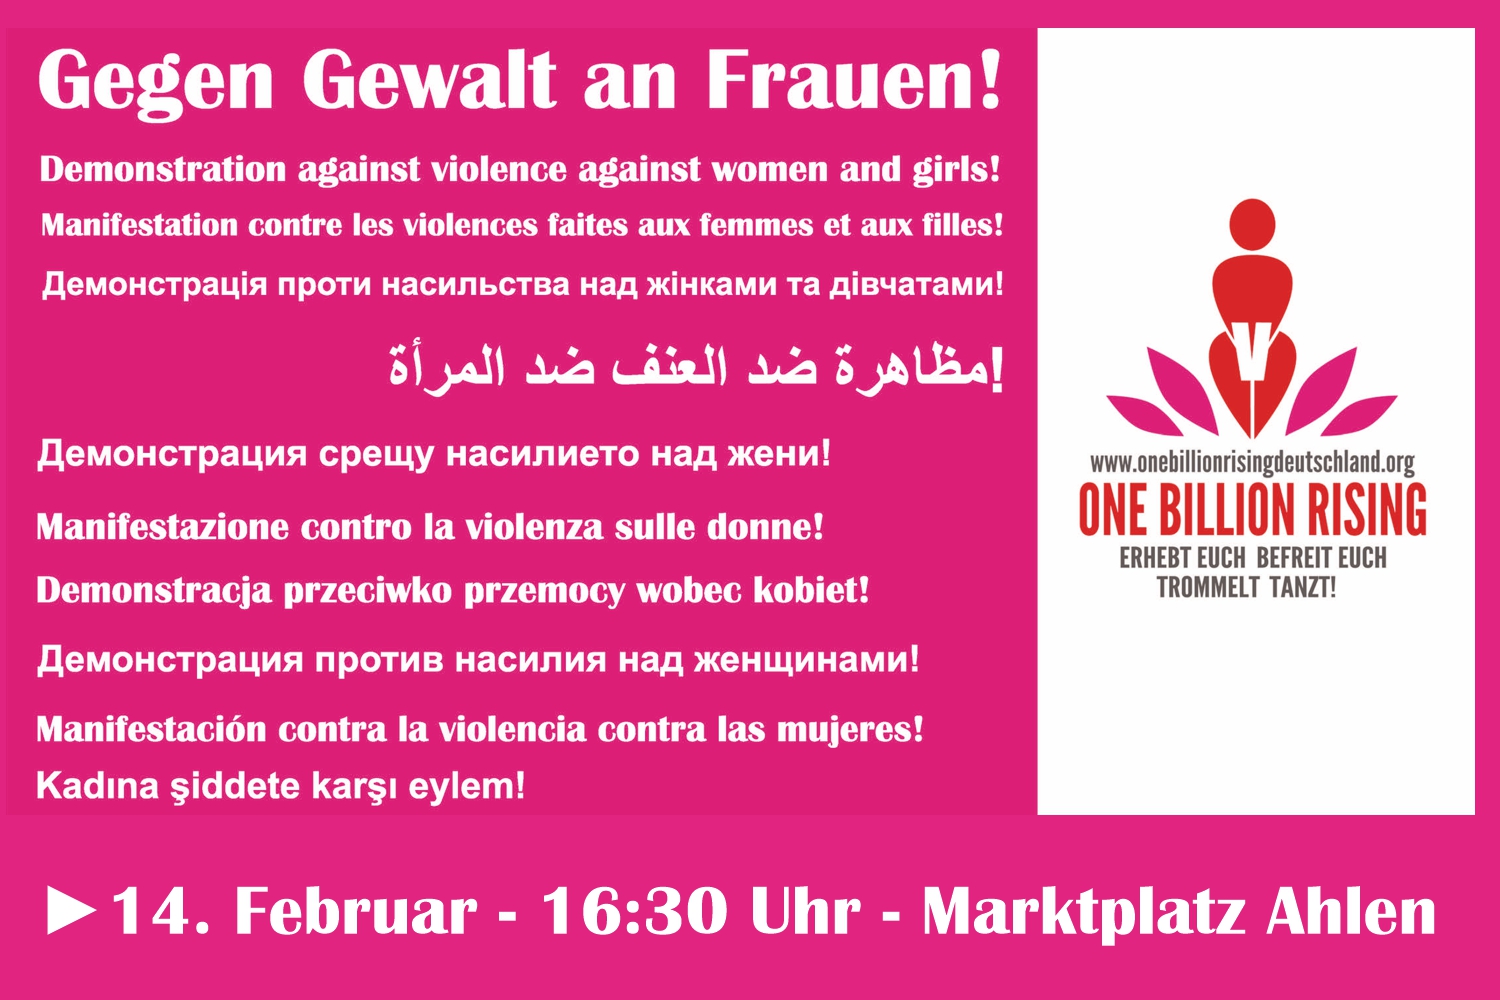 Bild zeigt: Plakat mit gegen Gewalt an Frauen in verschiedenen Sprachen